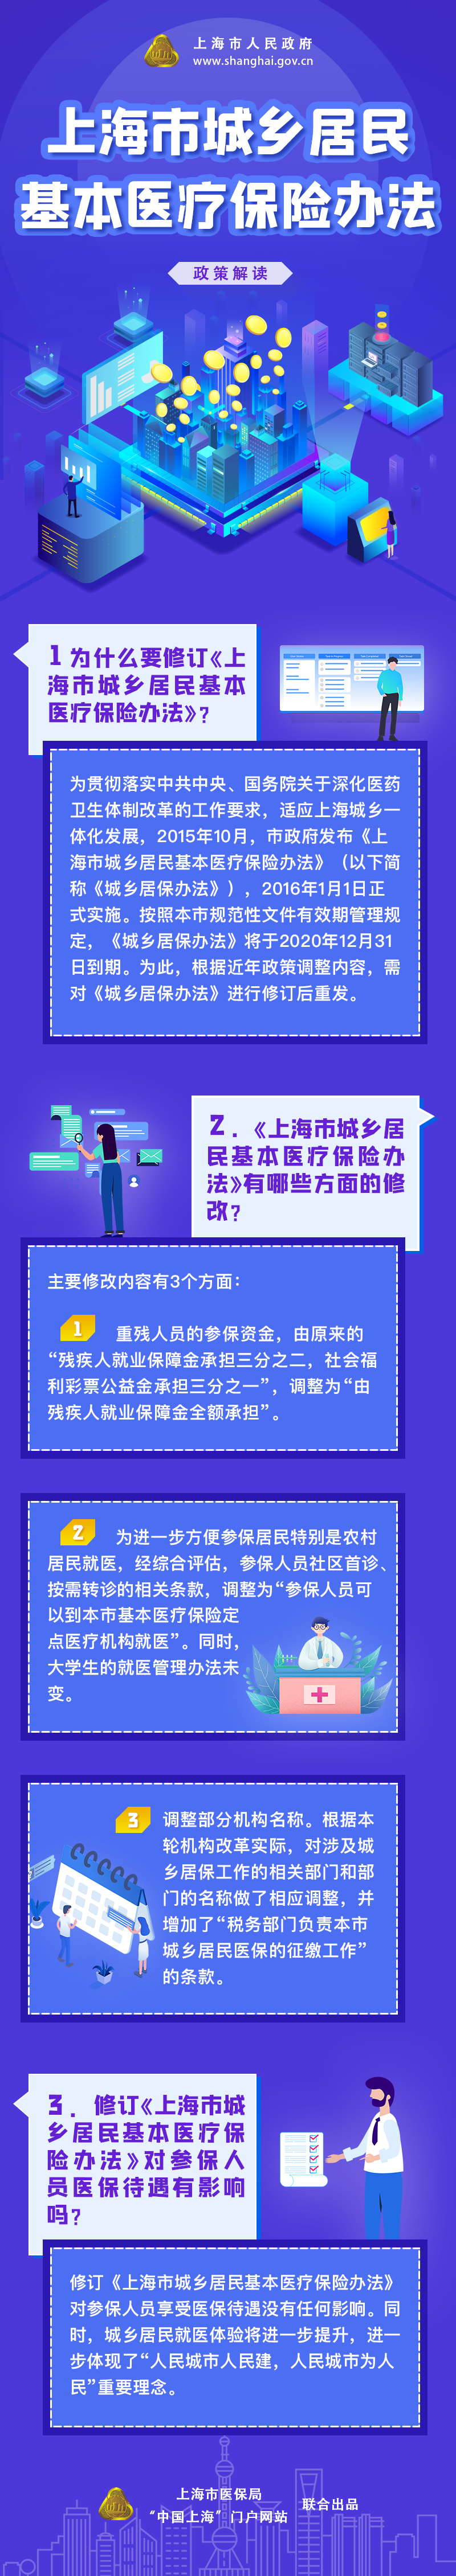 《上海市城乡居民基本医疗保险办法》修订要点图解.png